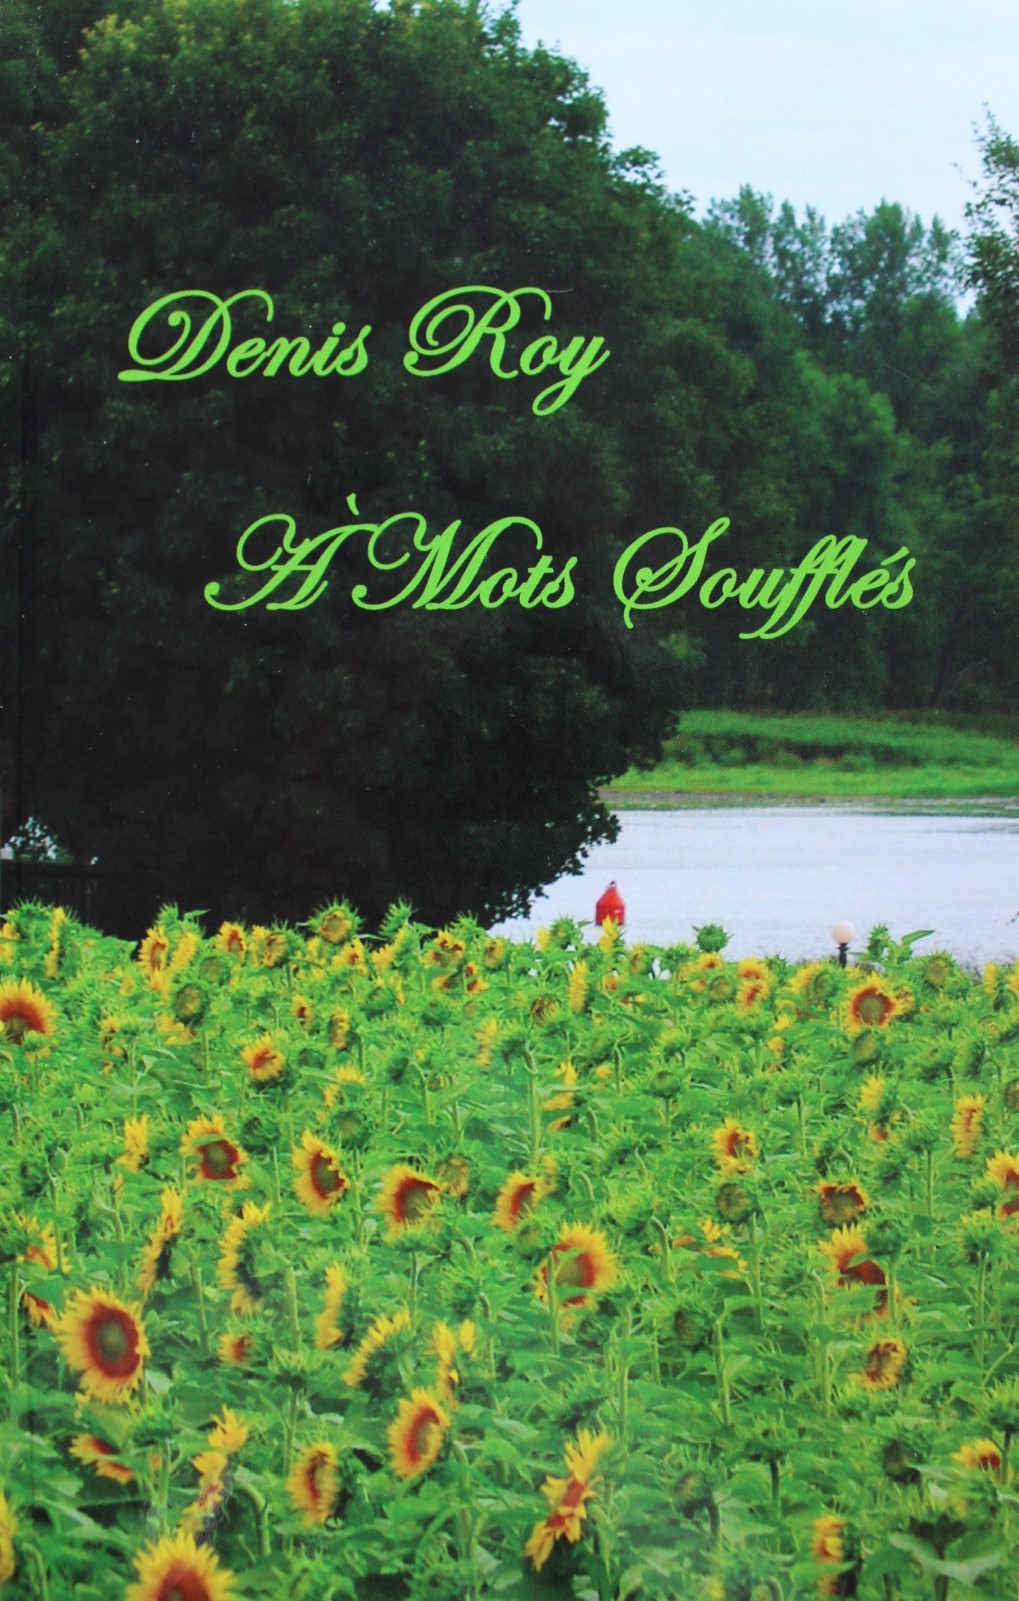 Achat en ligne livre Denis Roy